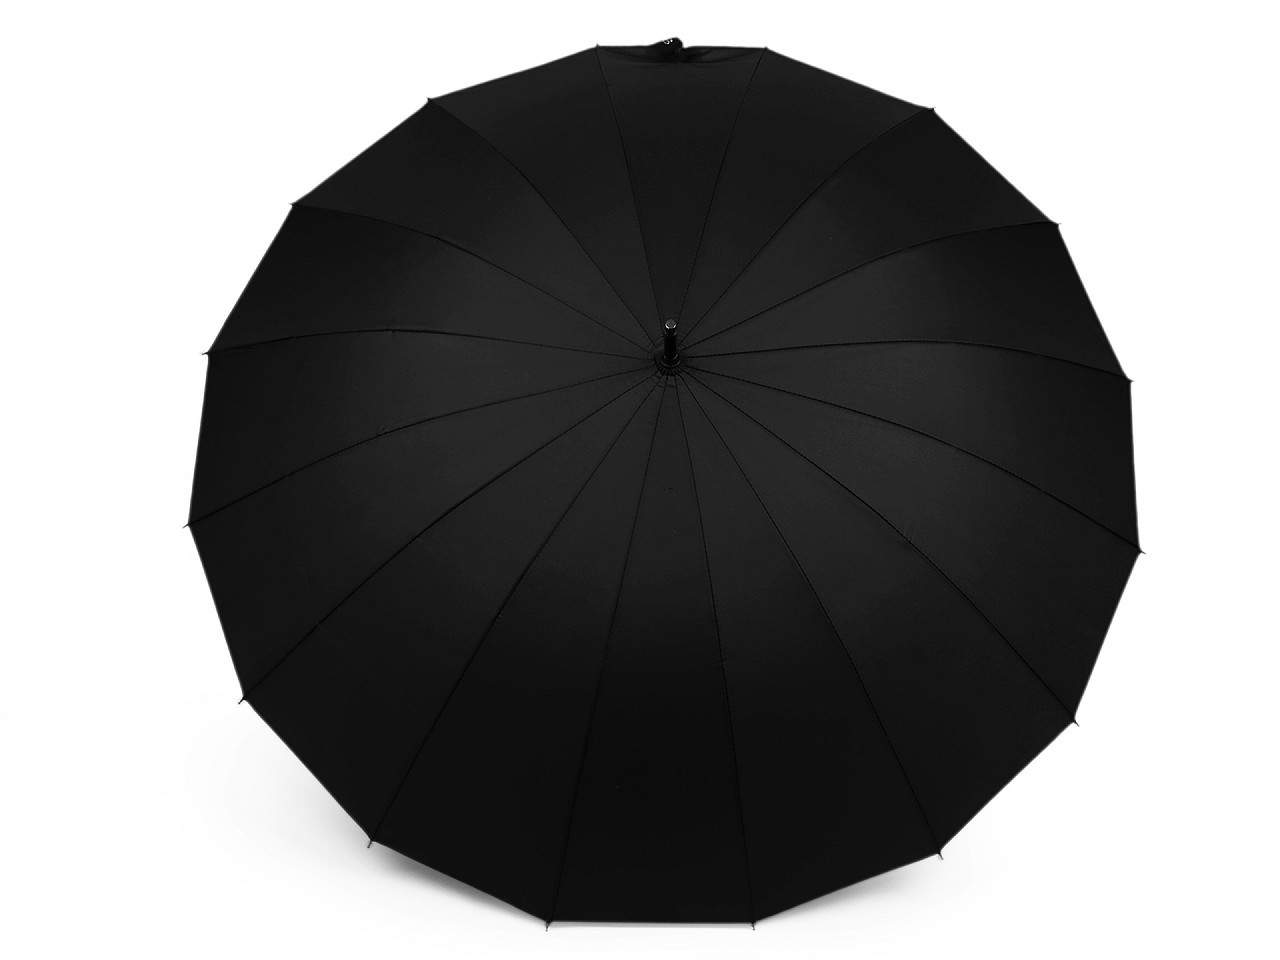 Velký rodinný deštník s dřevěnou rukojetí, barva 6 černá